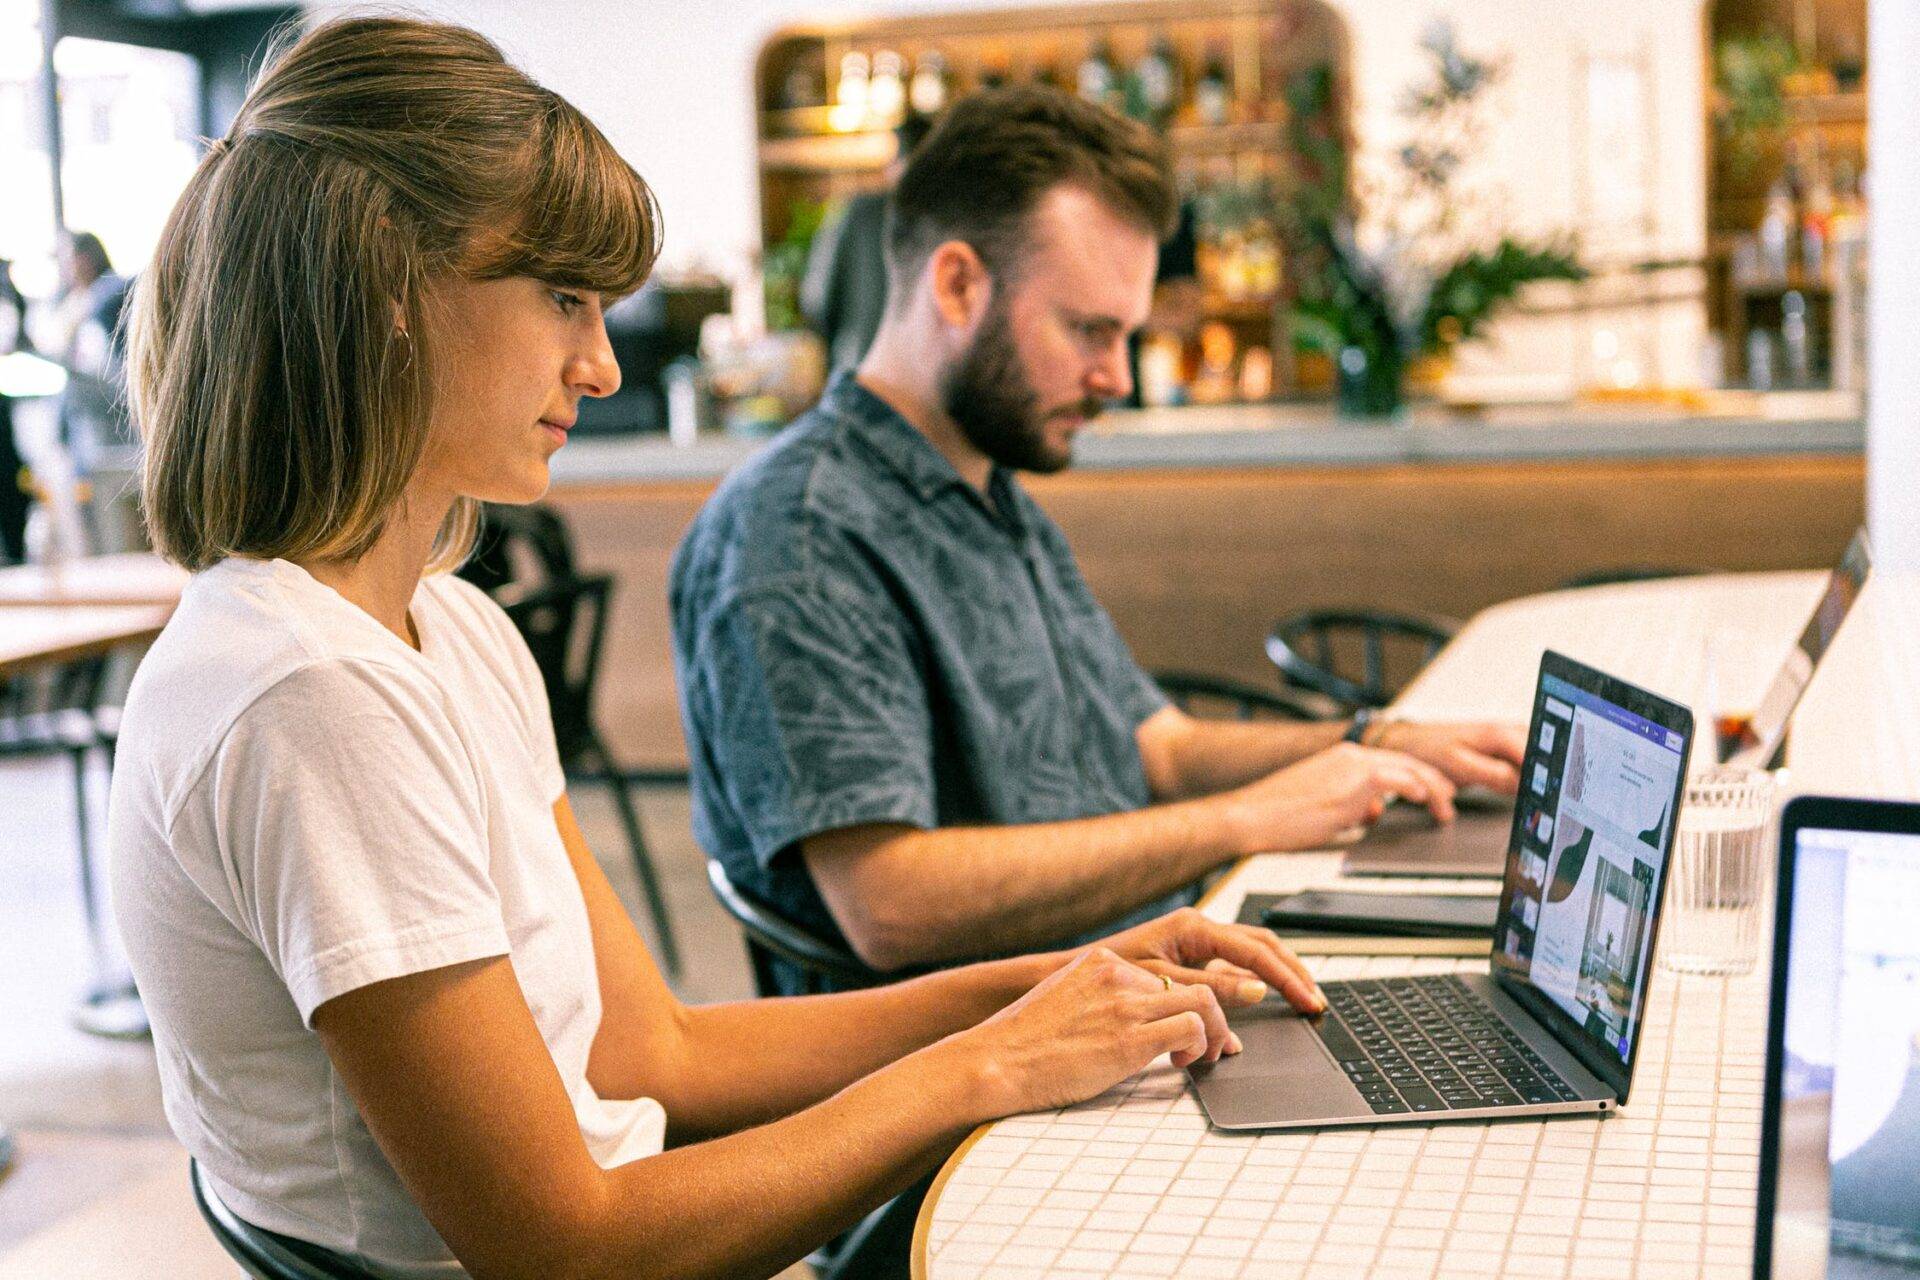 Deux personnes travaillant sur des ordinateurs portables dans un café.